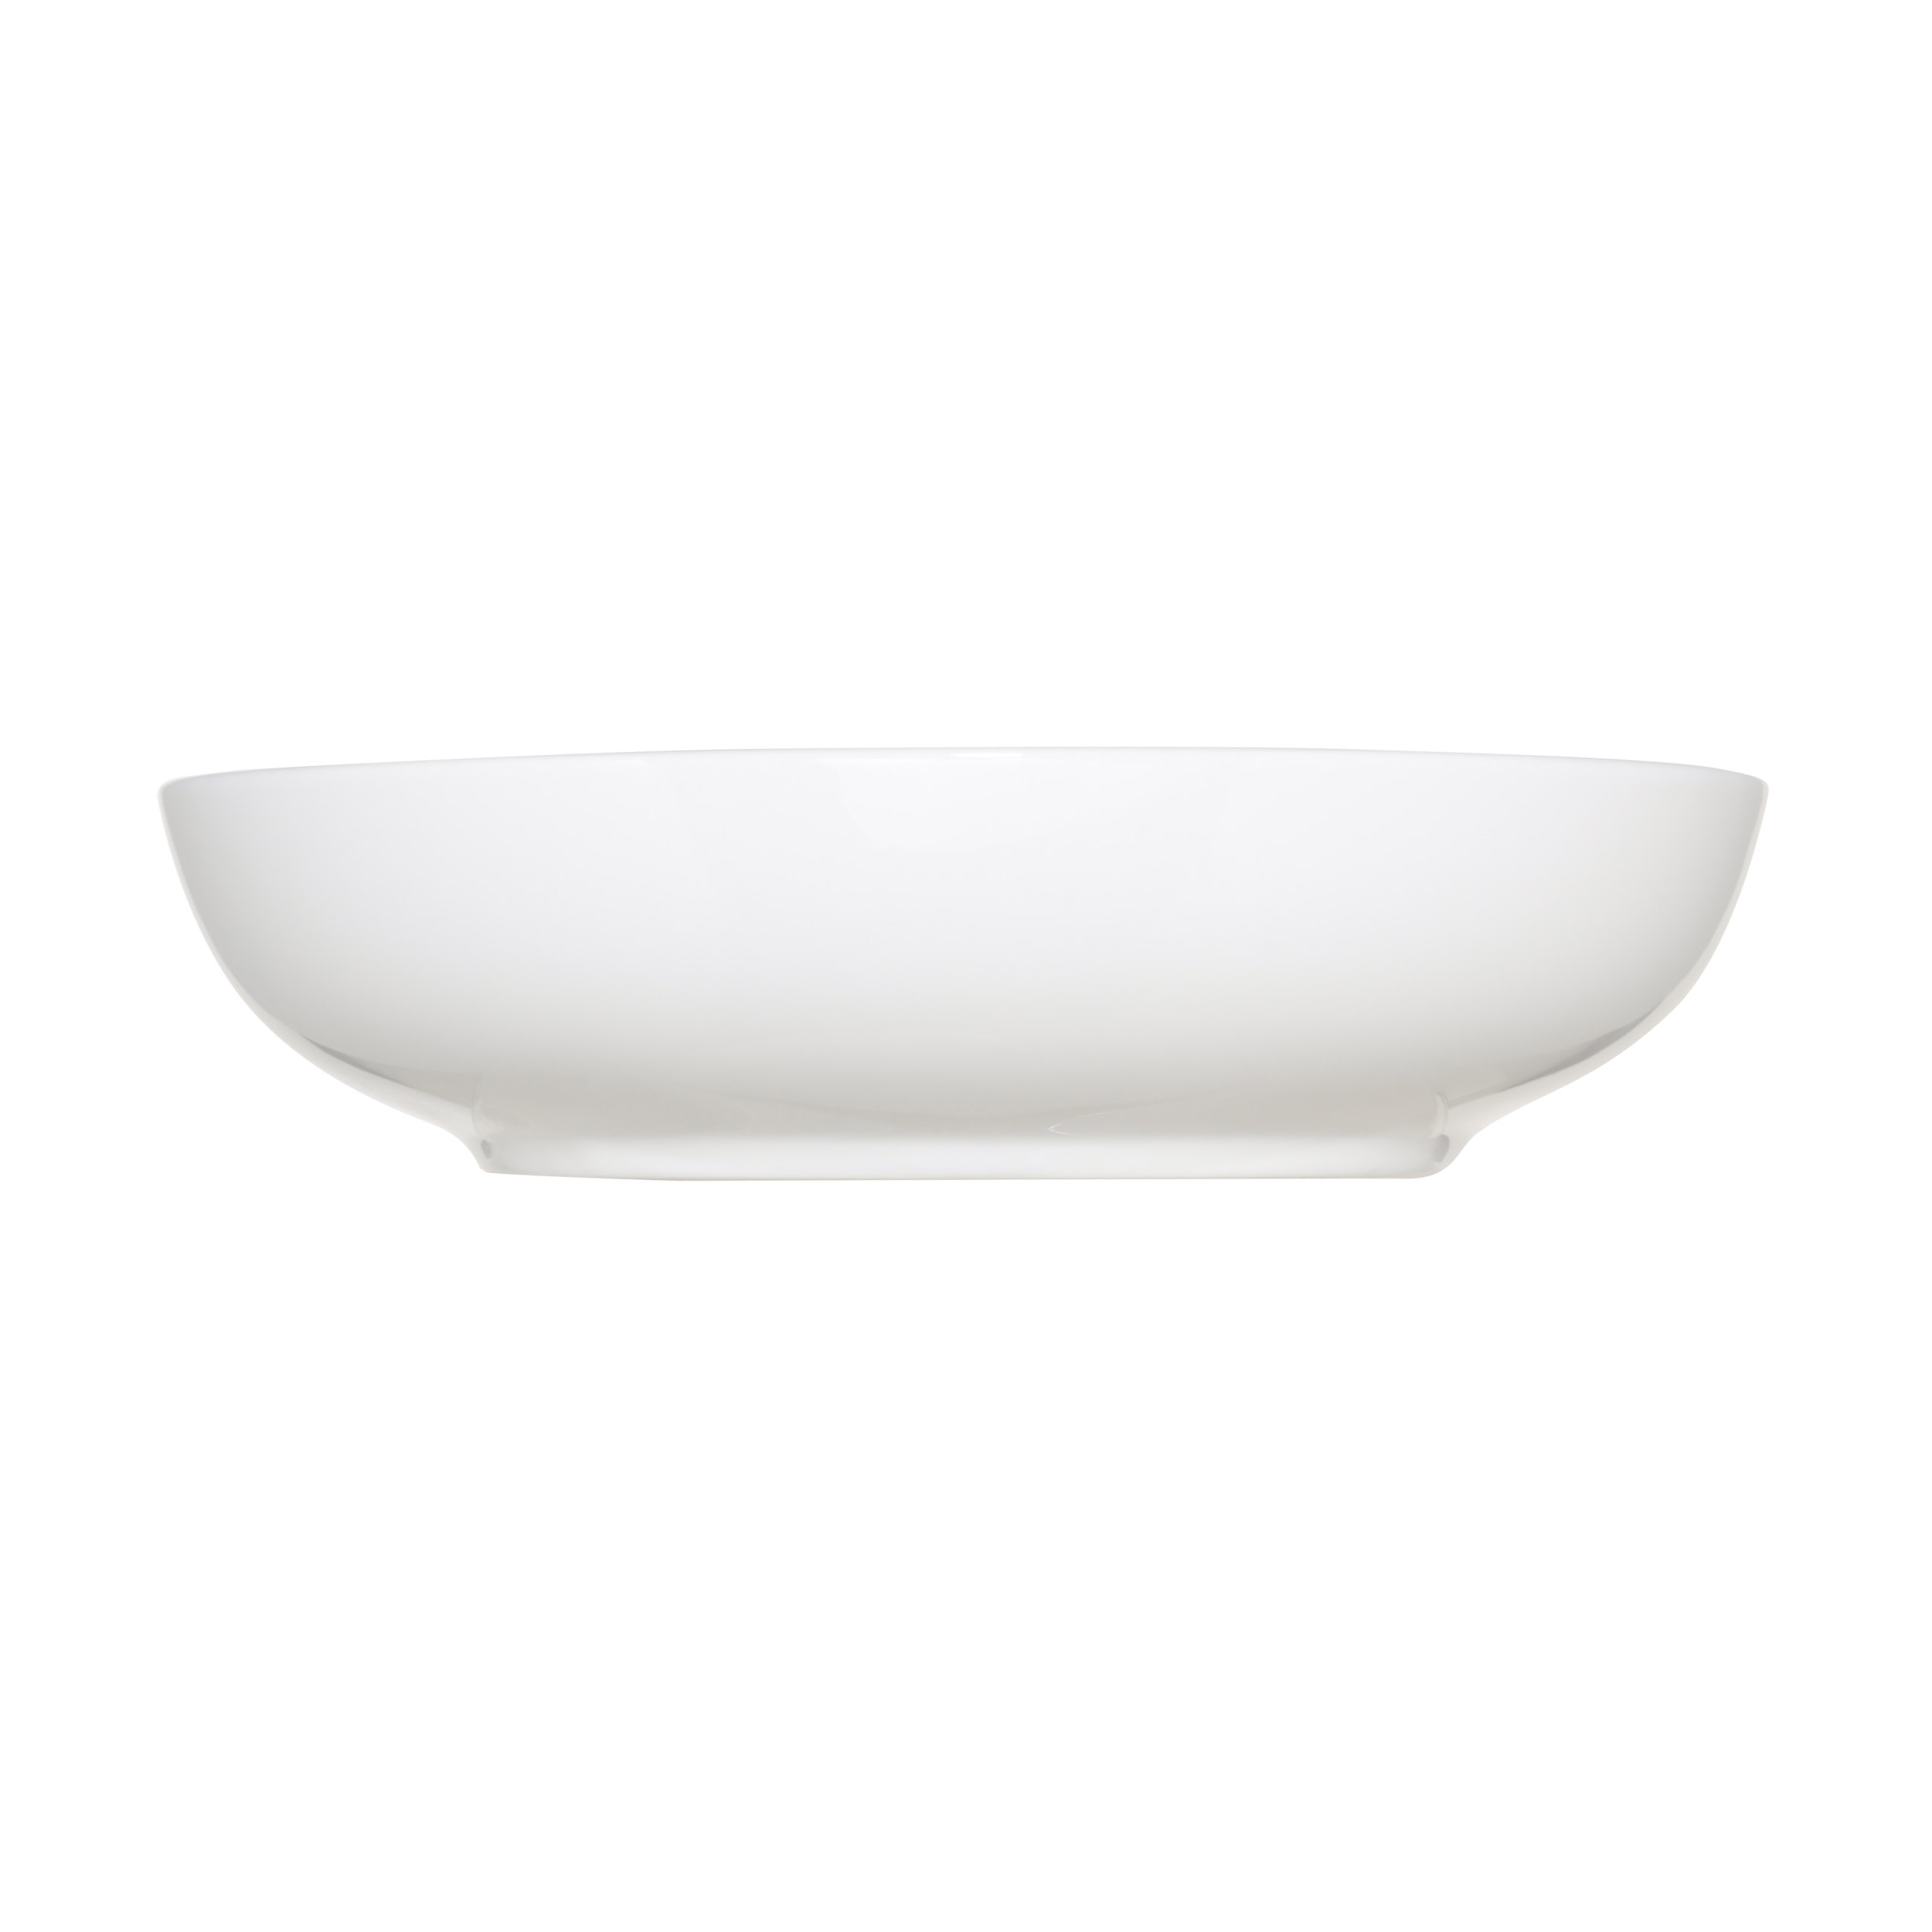 Soup plate, 20 cm, 2 pcs, porcelain F, white, Ideal white изображение № 3